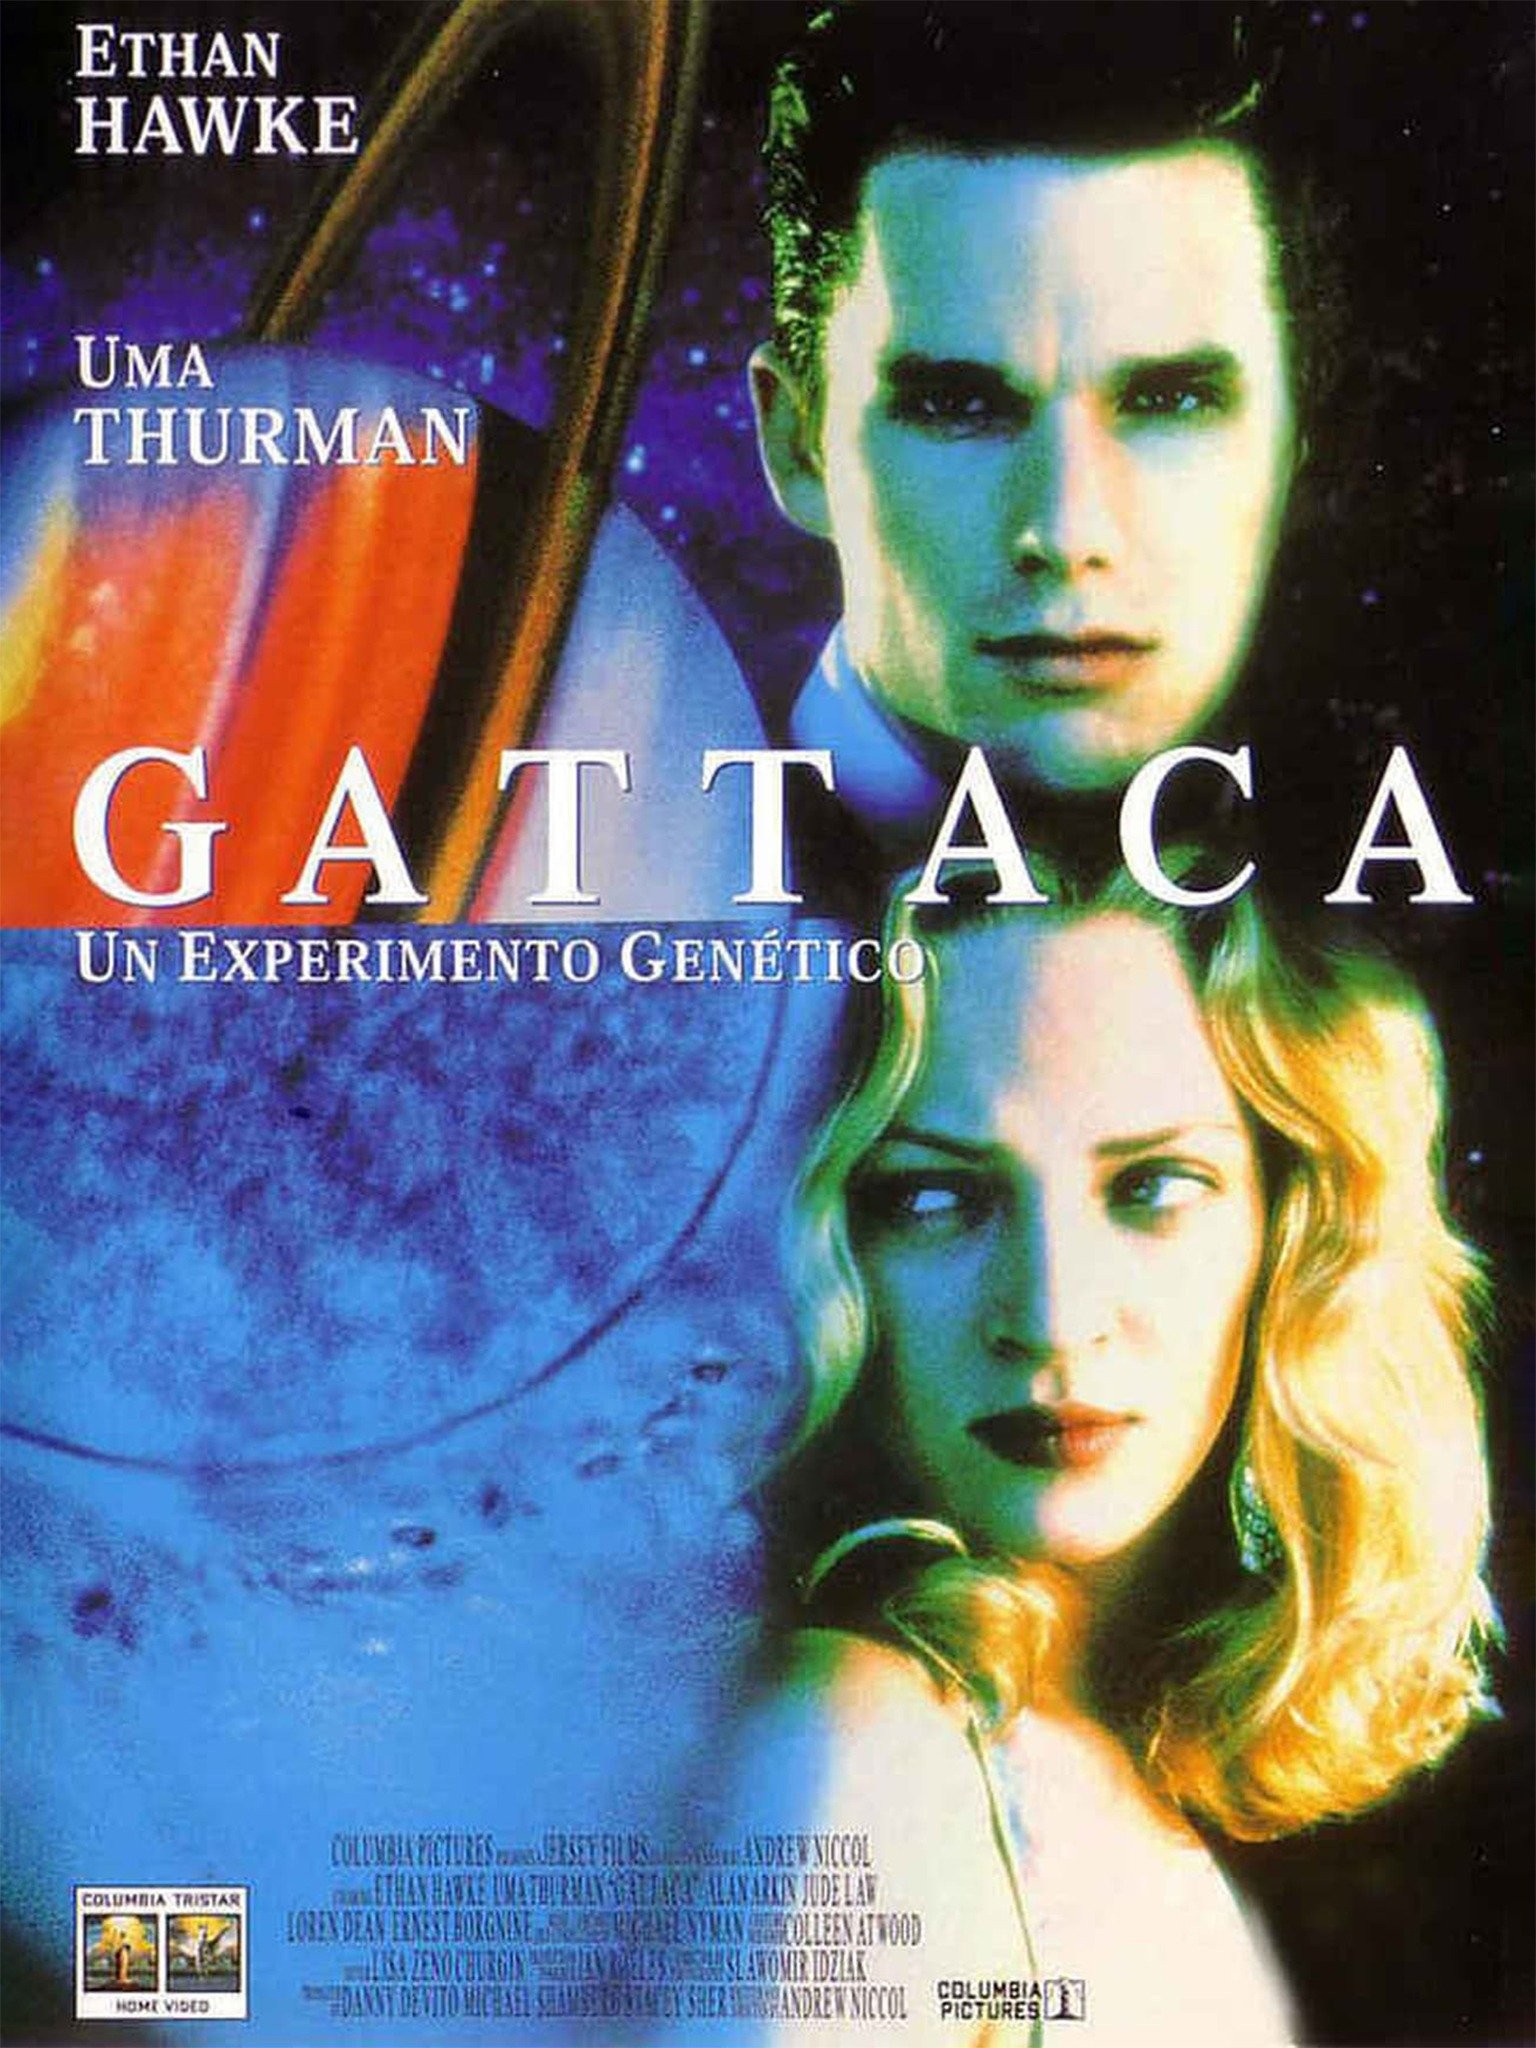 Gattaca (1997) Movie ** Ethan Hawke, Uma Thurman, Jude Law - YouTube